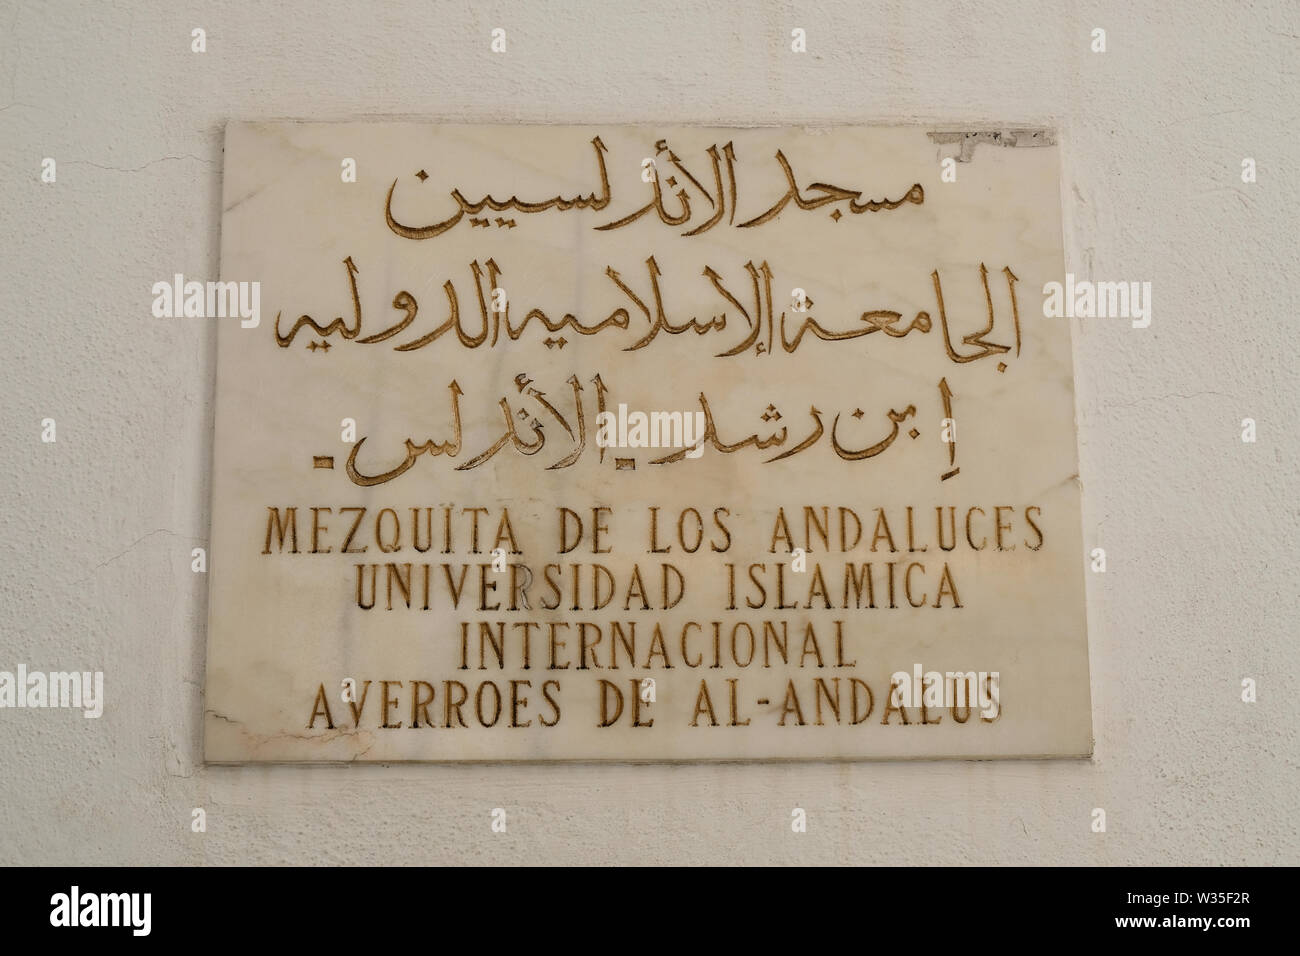 Segno per la moschea del Andaluces e Internazionale delle Università Islamica Averroes Al-Andalus a Cordoba, Spagna; spagnolo arabo bilinguismo. Foto Stock